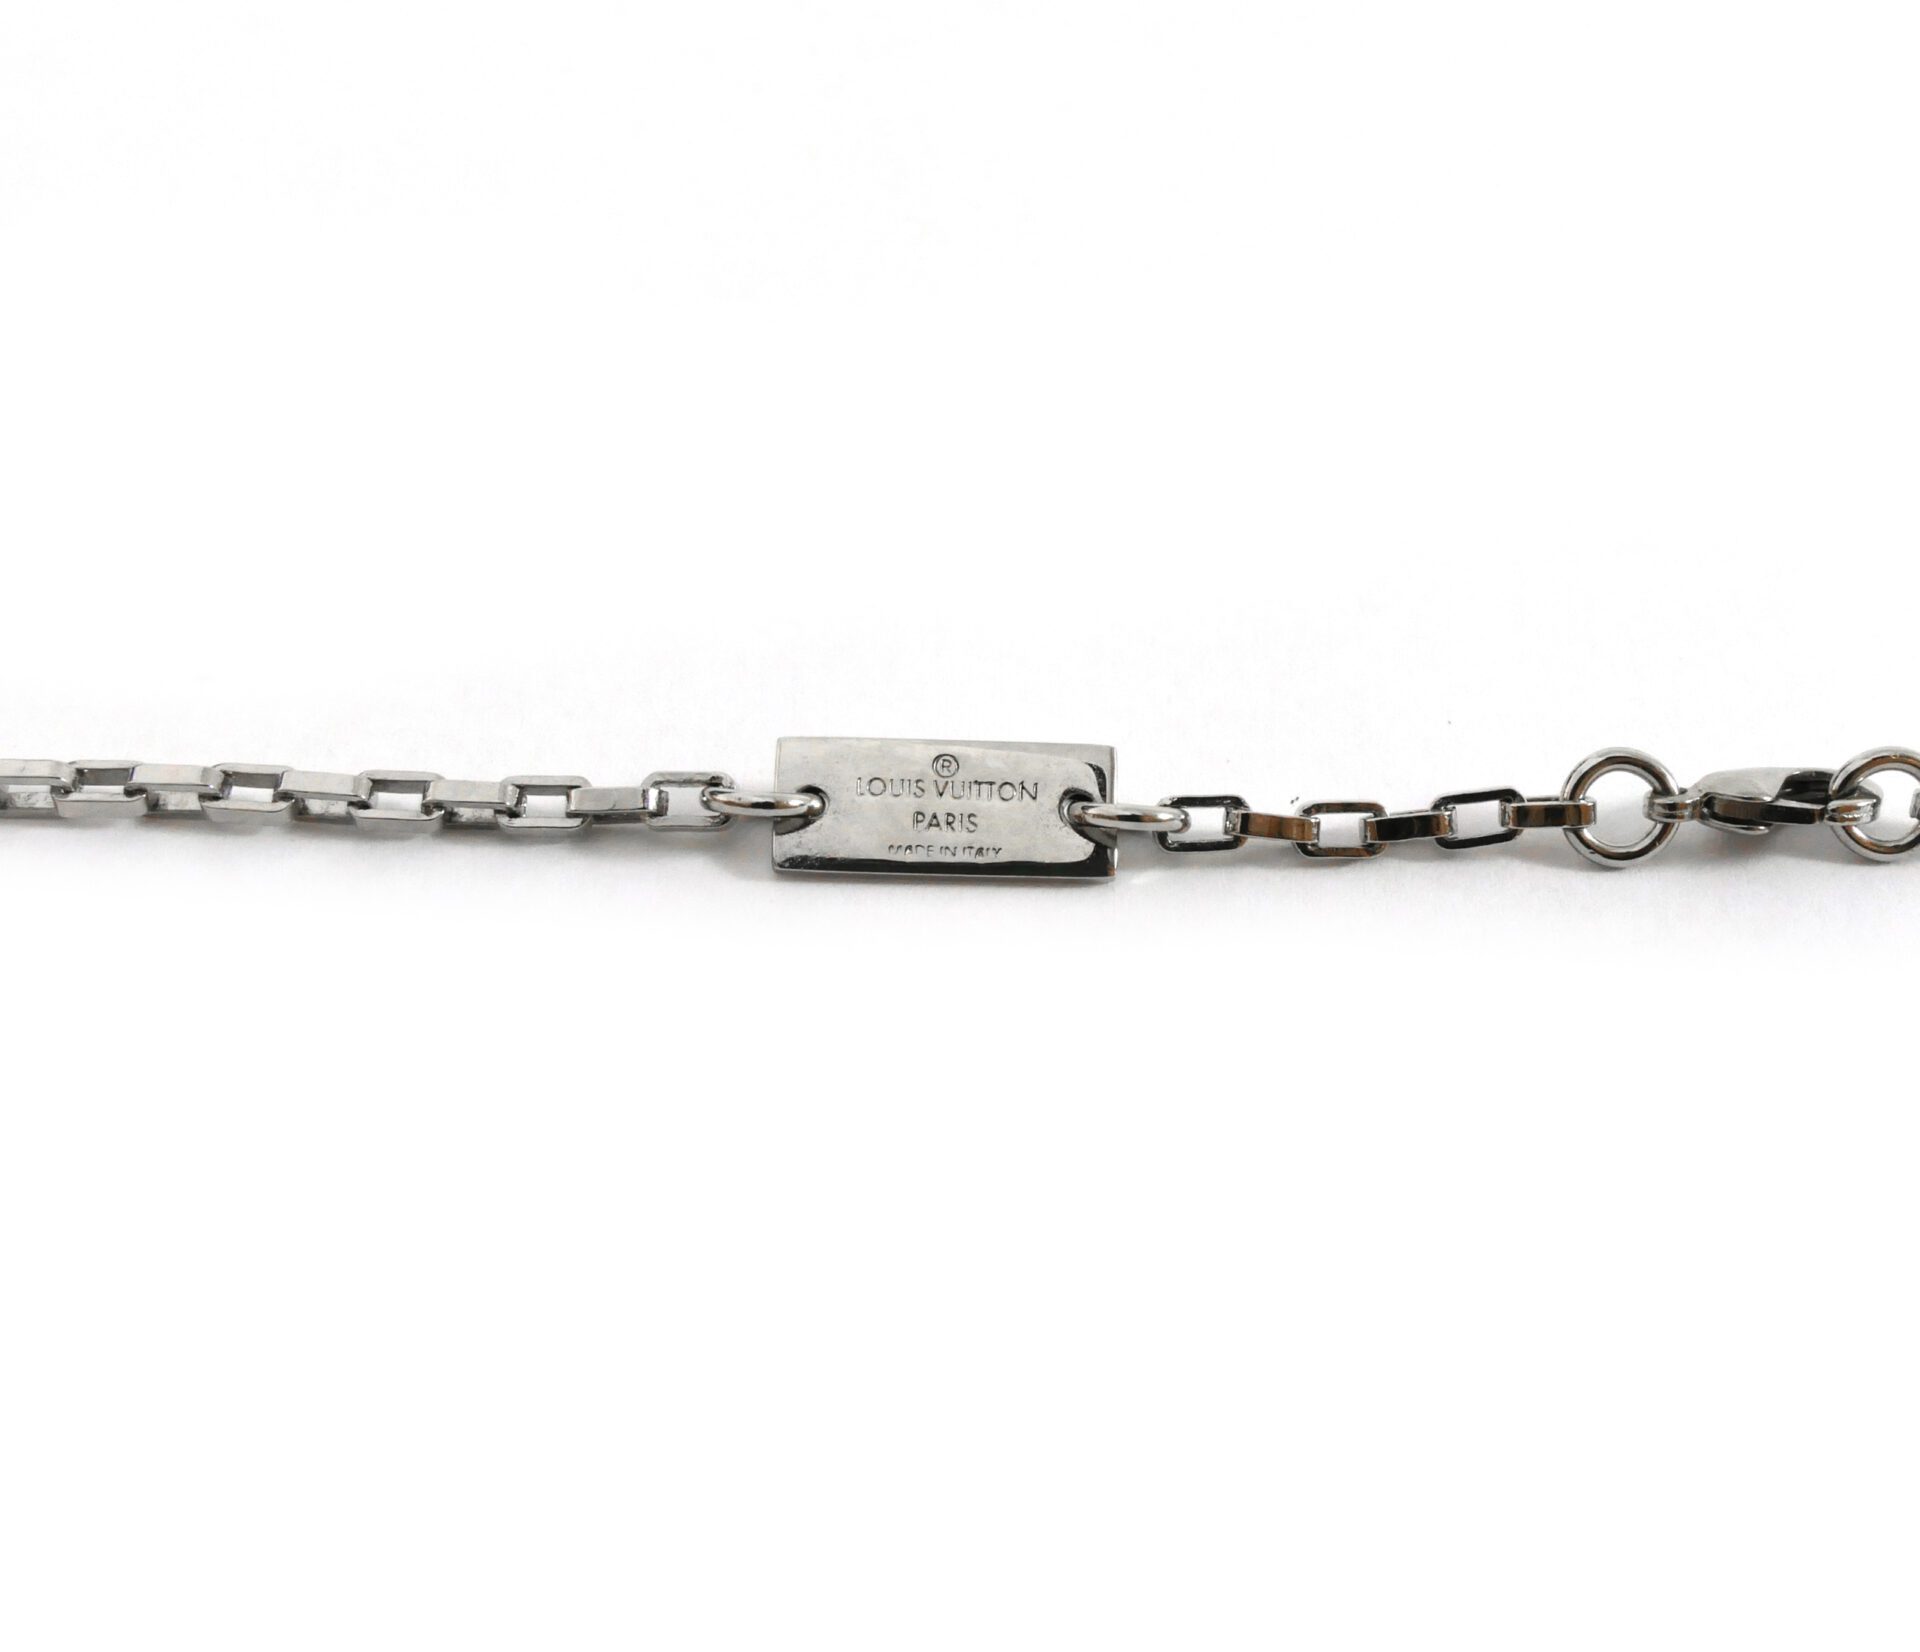 Louis Vuitton silver bracelet charm 7.8 inches